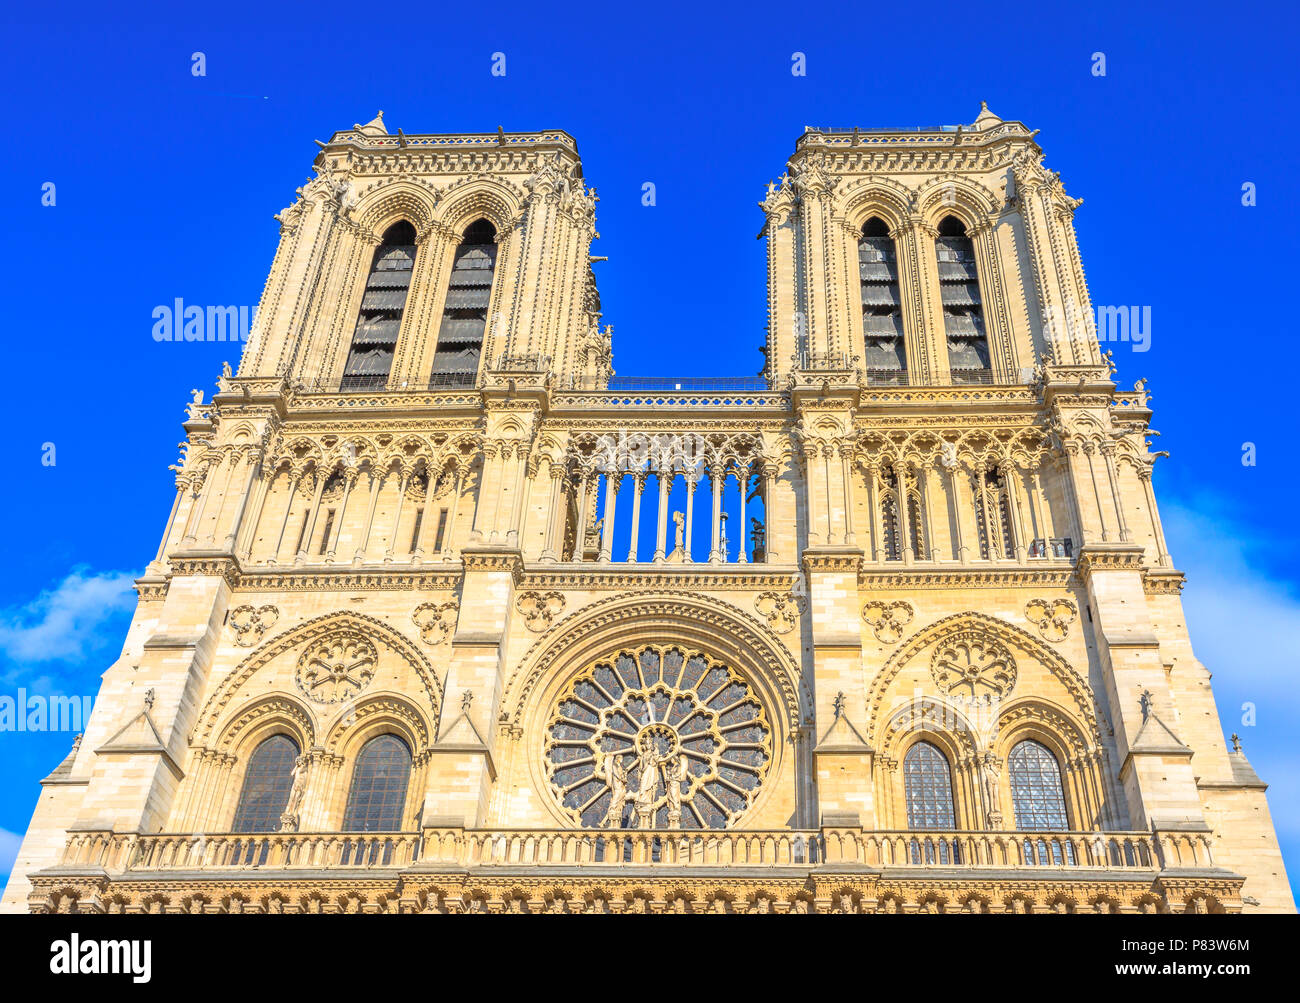 Detalles de la arquitectura francesa de la catedral de Notre Dame de París, Francia. Hermoso día soleado en el cielo azul. Iglesia de Nuestra Señora de París. Fachada principal central con torres y rosetones góticos. Foto de stock